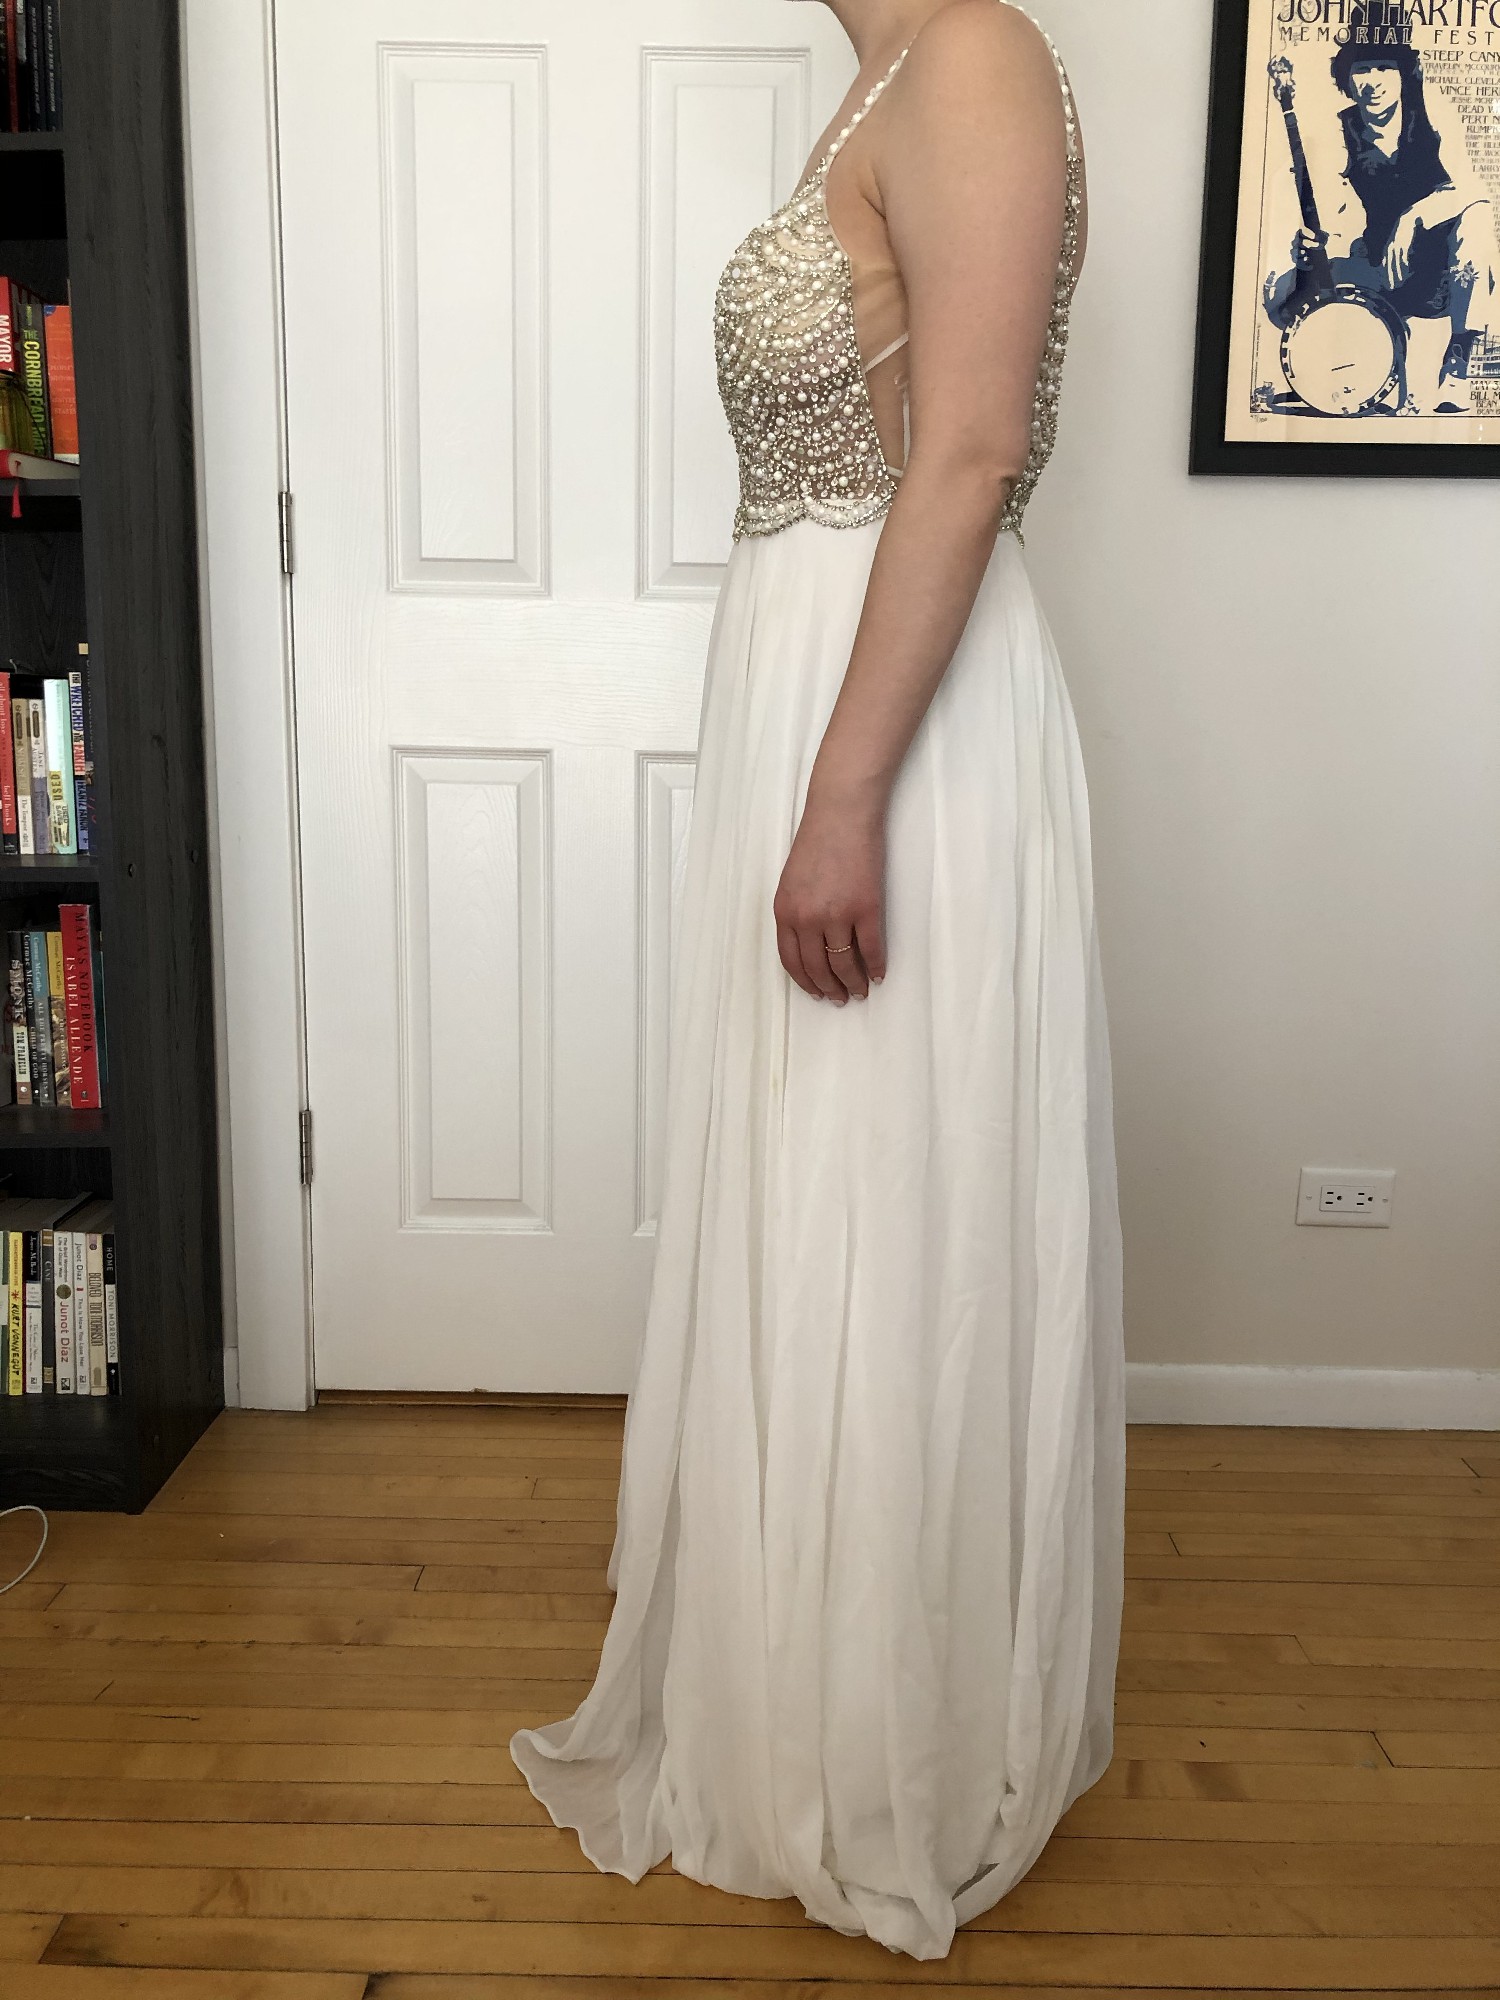 Lace Wedding Dresses - Lace Bridal Gowns - Lulus